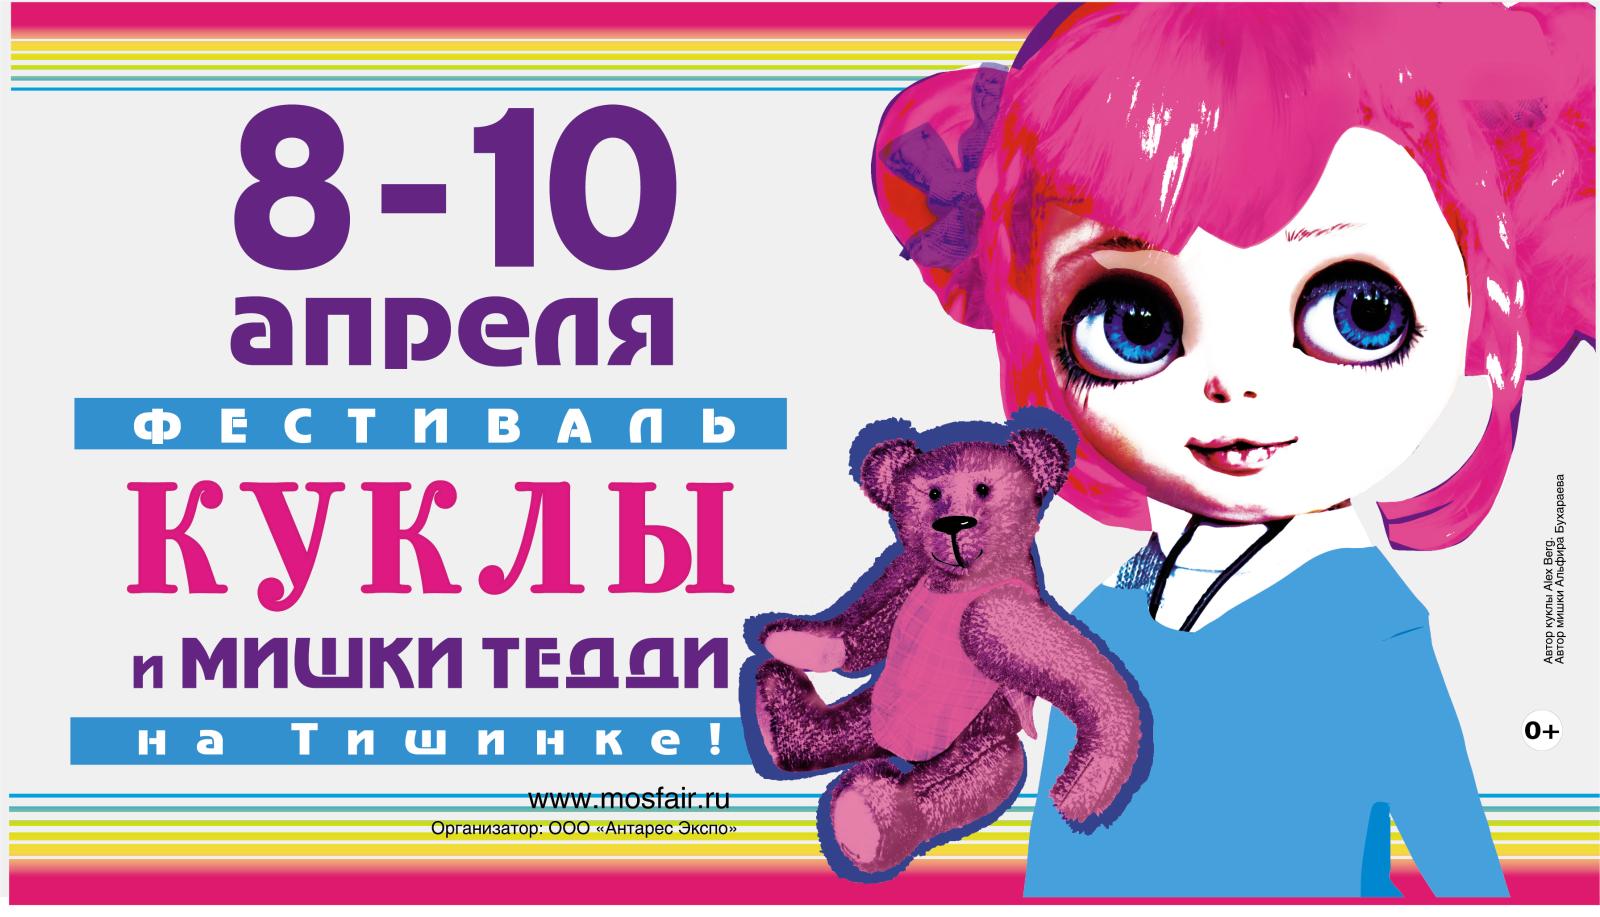 «Moscow Fair» на Тишинке: легендарная арт-ярмарка, собравшая на одной площадке кукол и мишек Тедди трех веков, вновь открывает свои двери